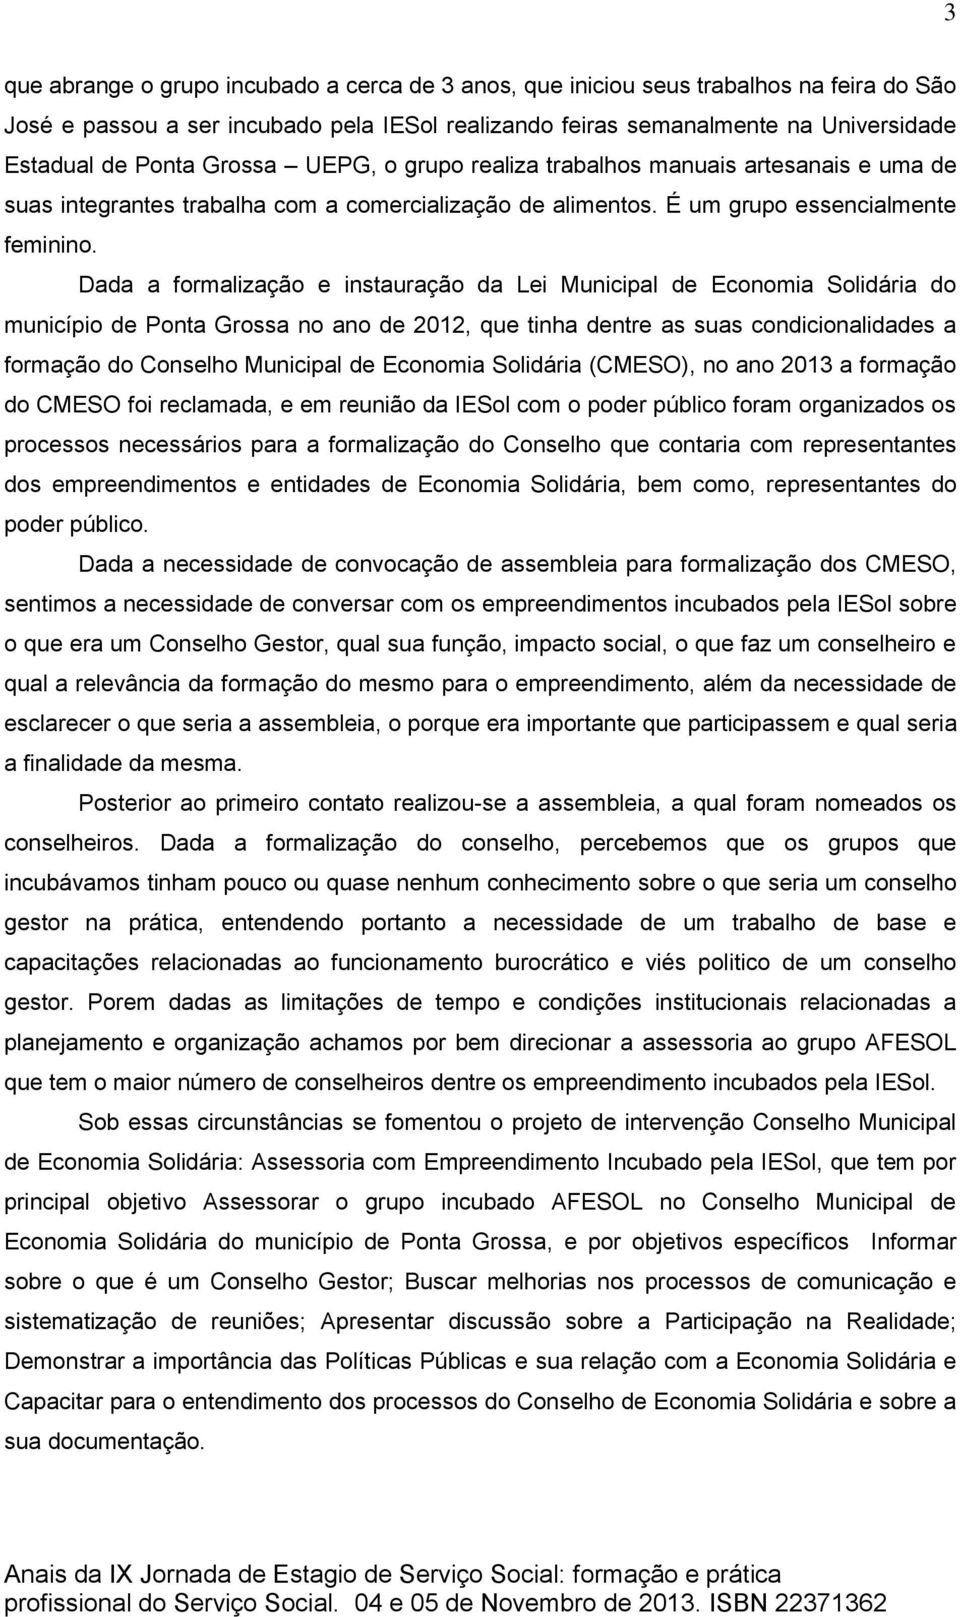 Dada a formalização e instauração da Lei Municipal de Economia Solidária do município de Ponta Grossa no ano de 2012, que tinha dentre as suas condicionalidades a formação do Conselho Municipal de